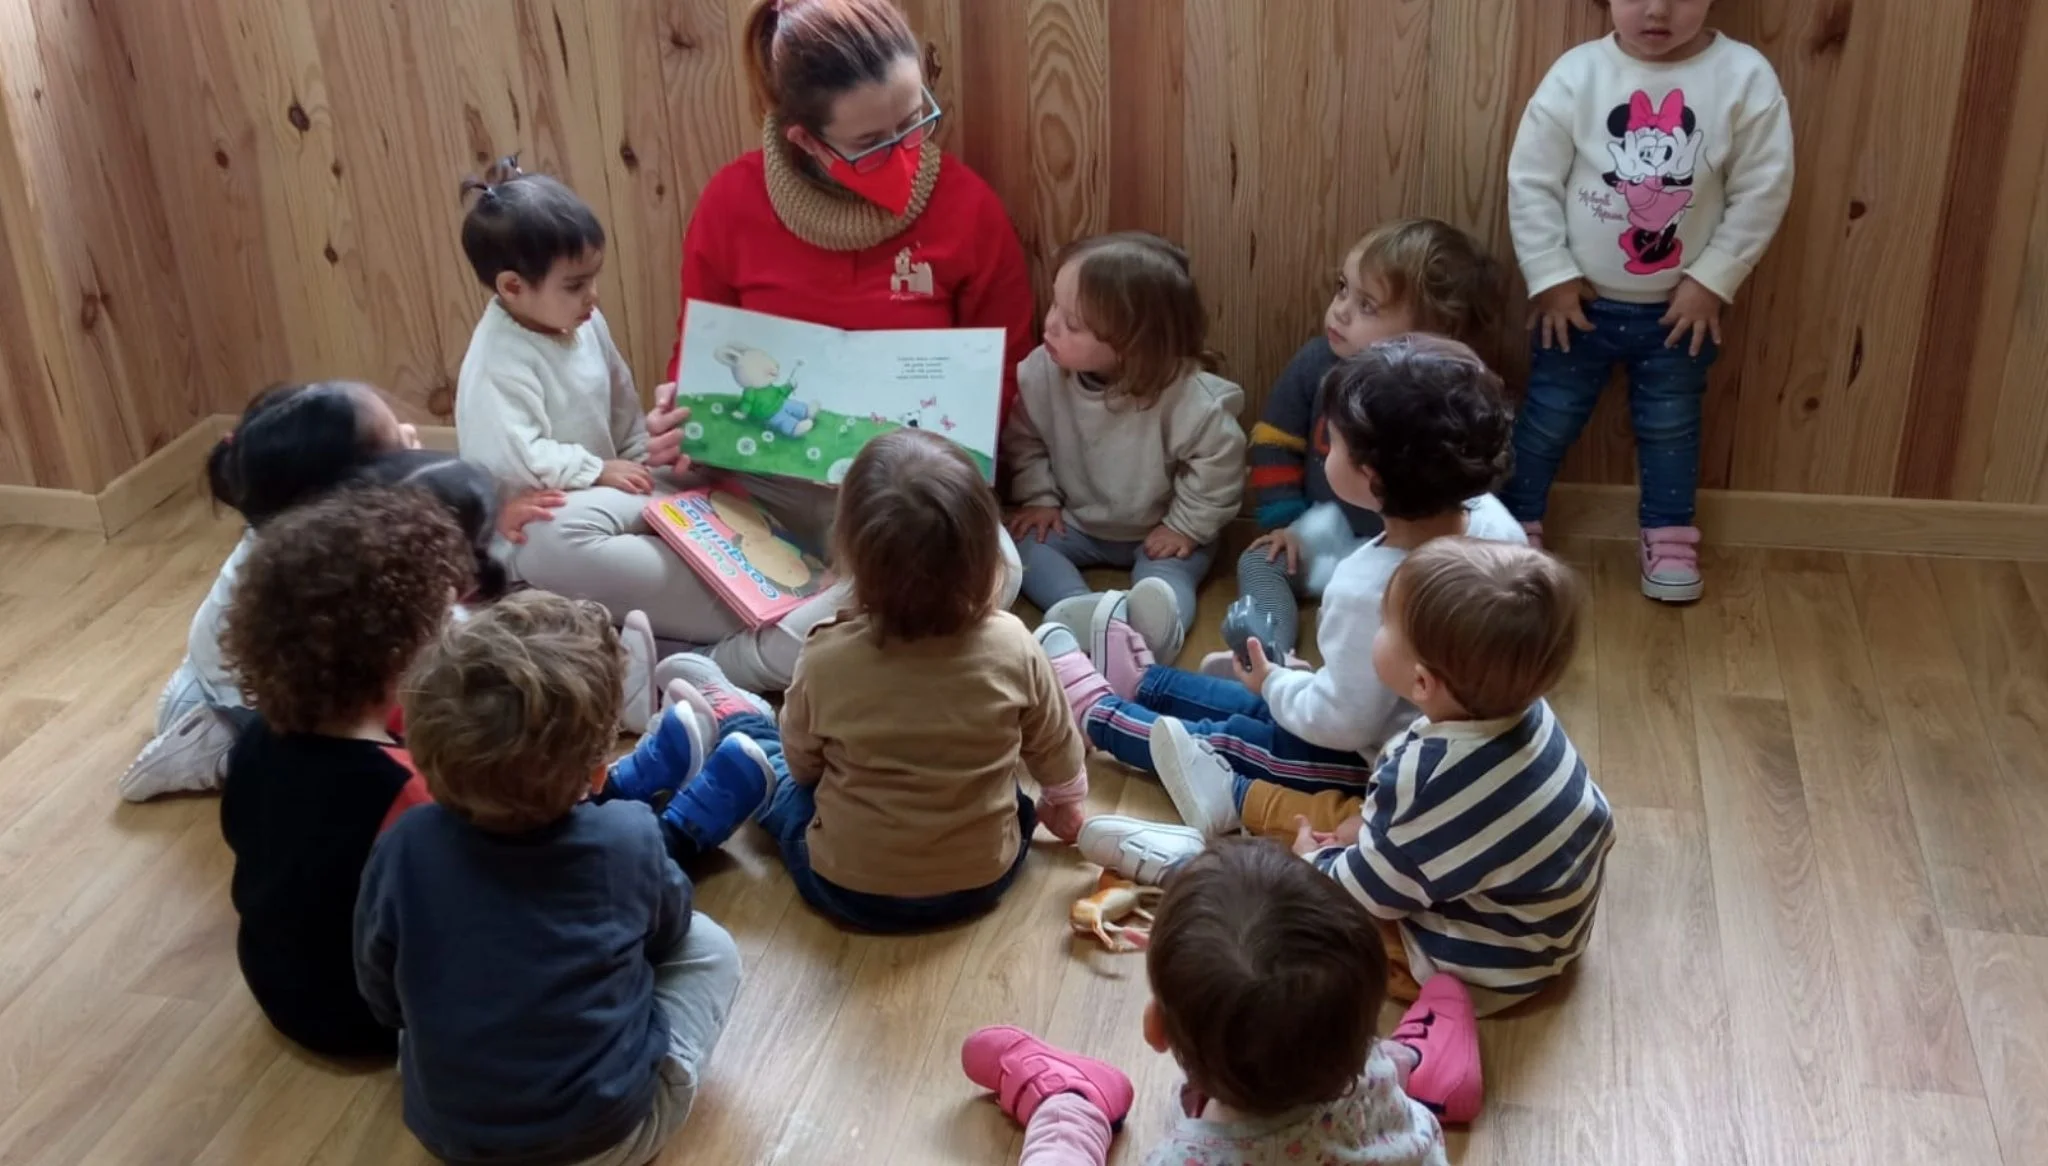 La profesora lee un cuento a los niños